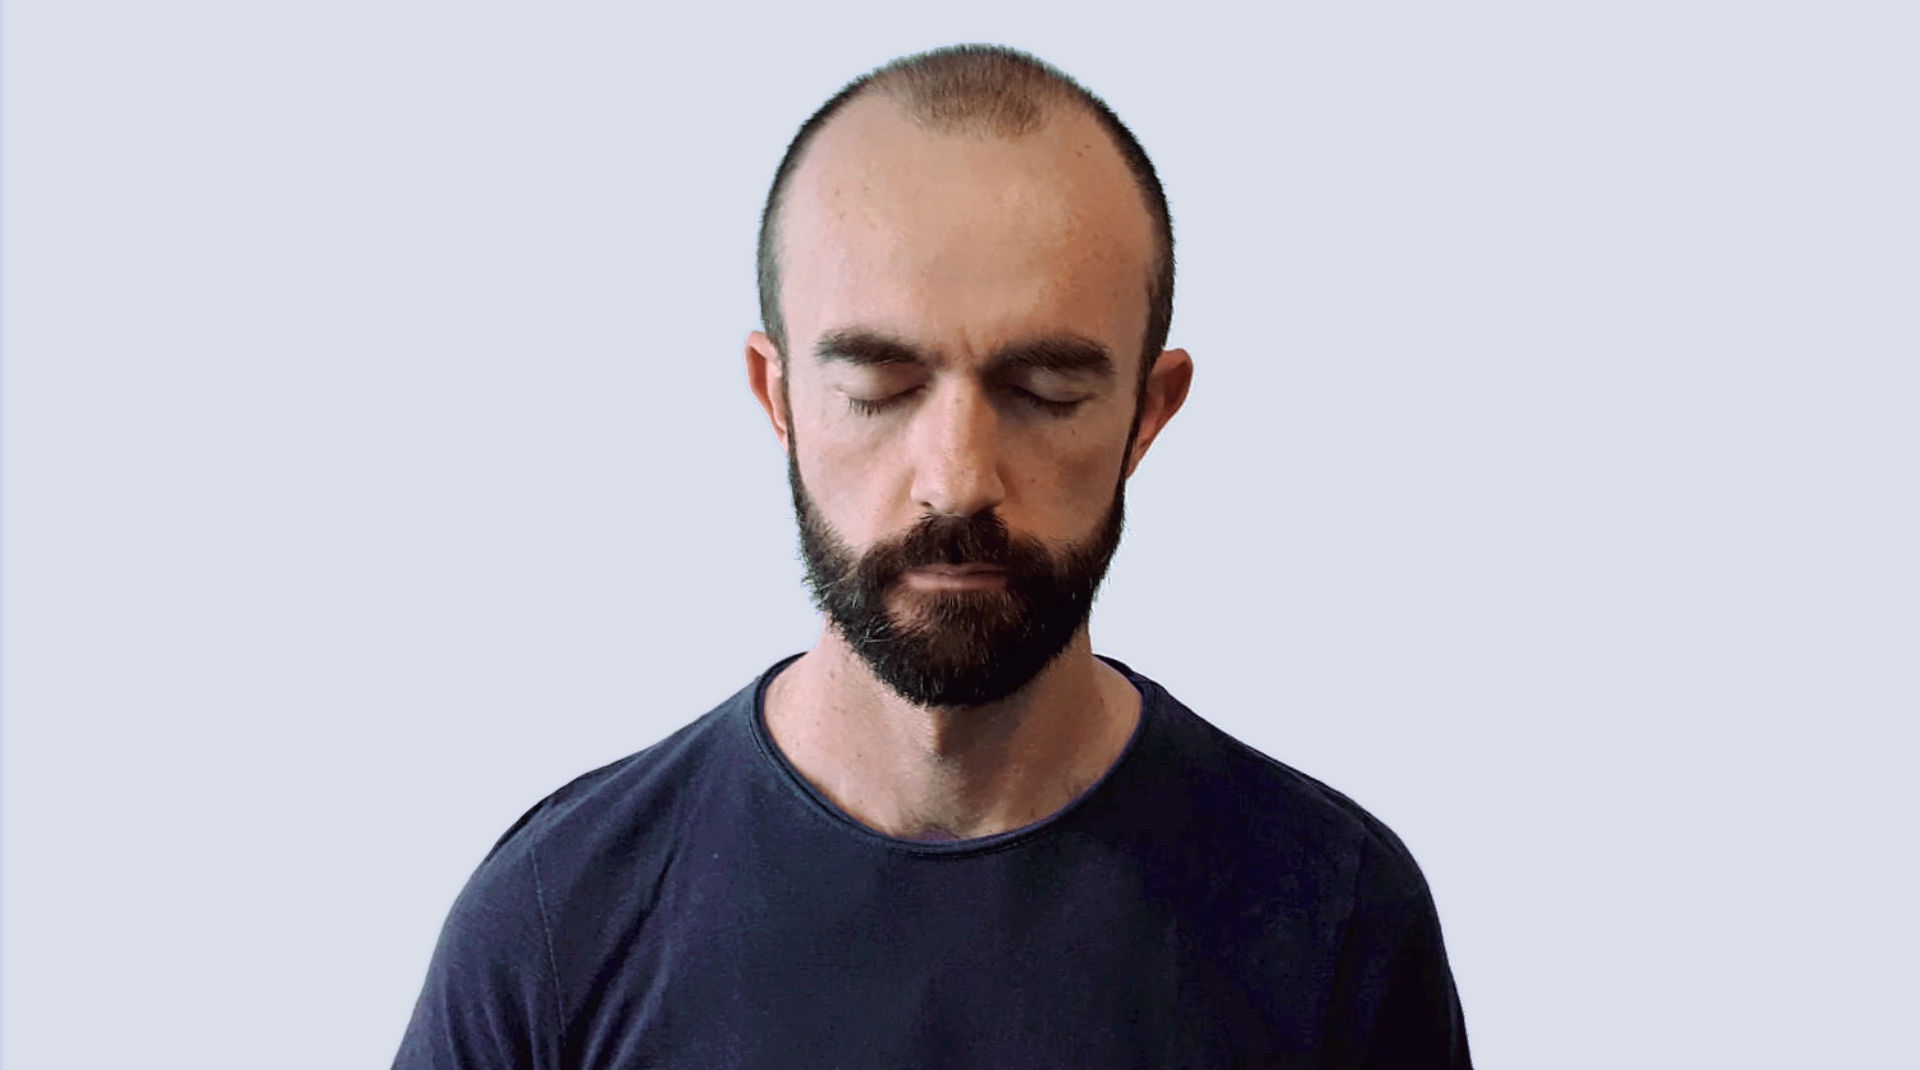 Home amb els ulls tancats durant una pràctica de mindfulness